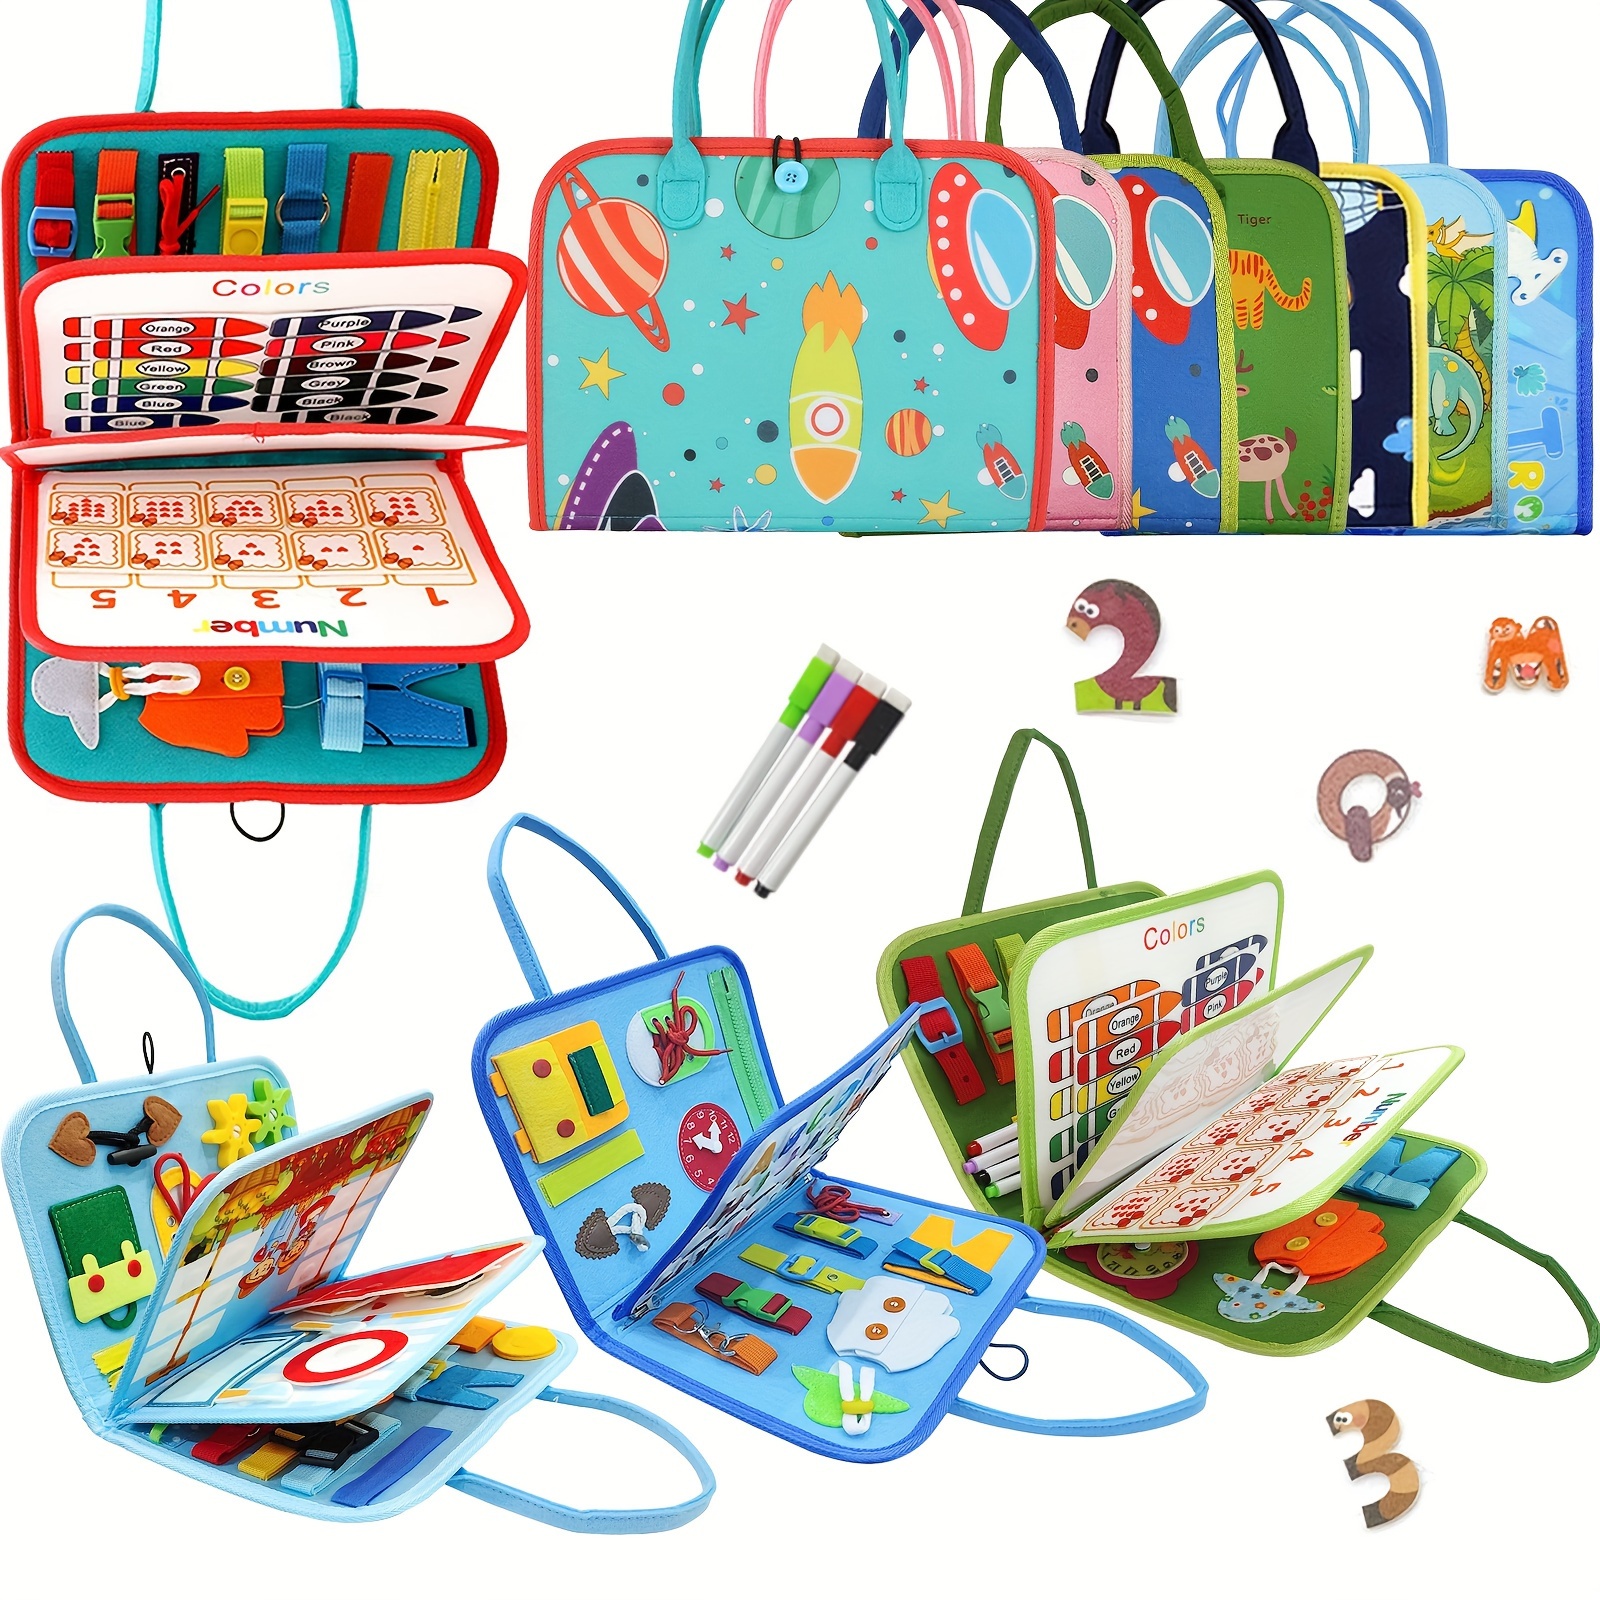  Juguetes sensoriales educativos para bebés de 1 año, juguetes  sensoriales preescolares para aprender habilidades motoras finas,  clasificador de formas, juguetes Montessori para bebés de 6 a 12 meses, 8  cuerdas, bolsa